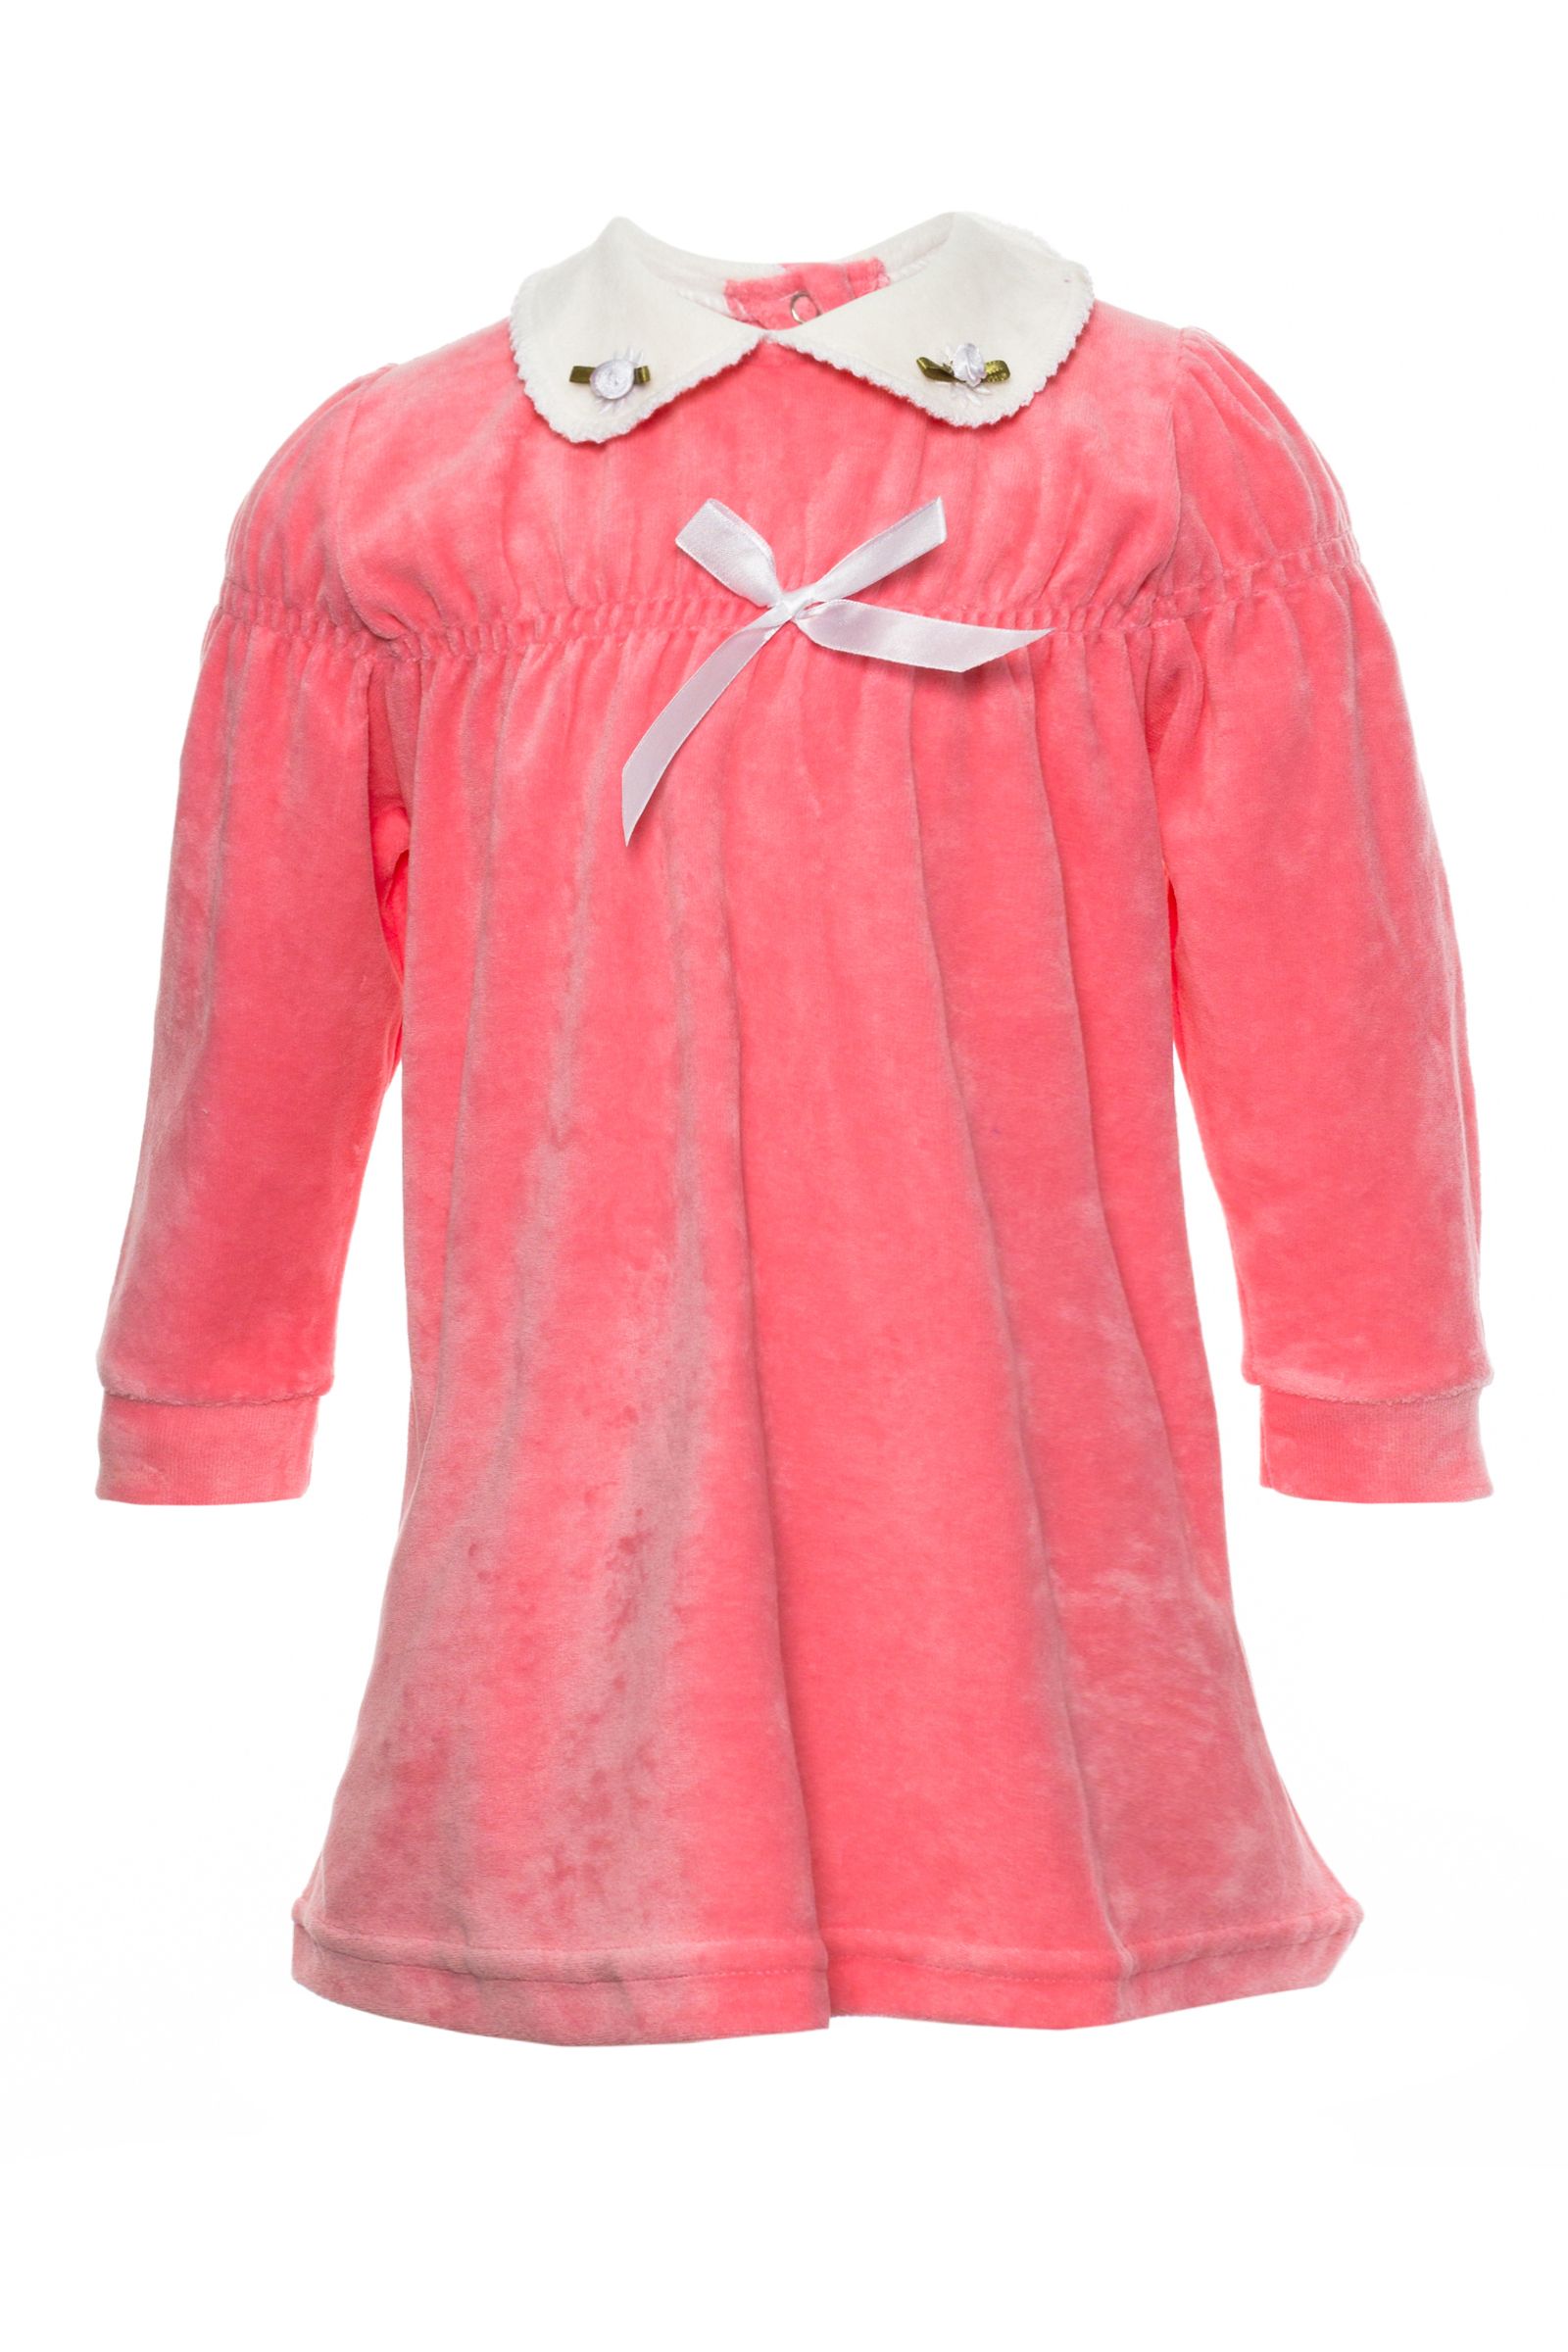 Платье-ПЛ04-1451 оптом от производителя детской одежды 'Алёна'